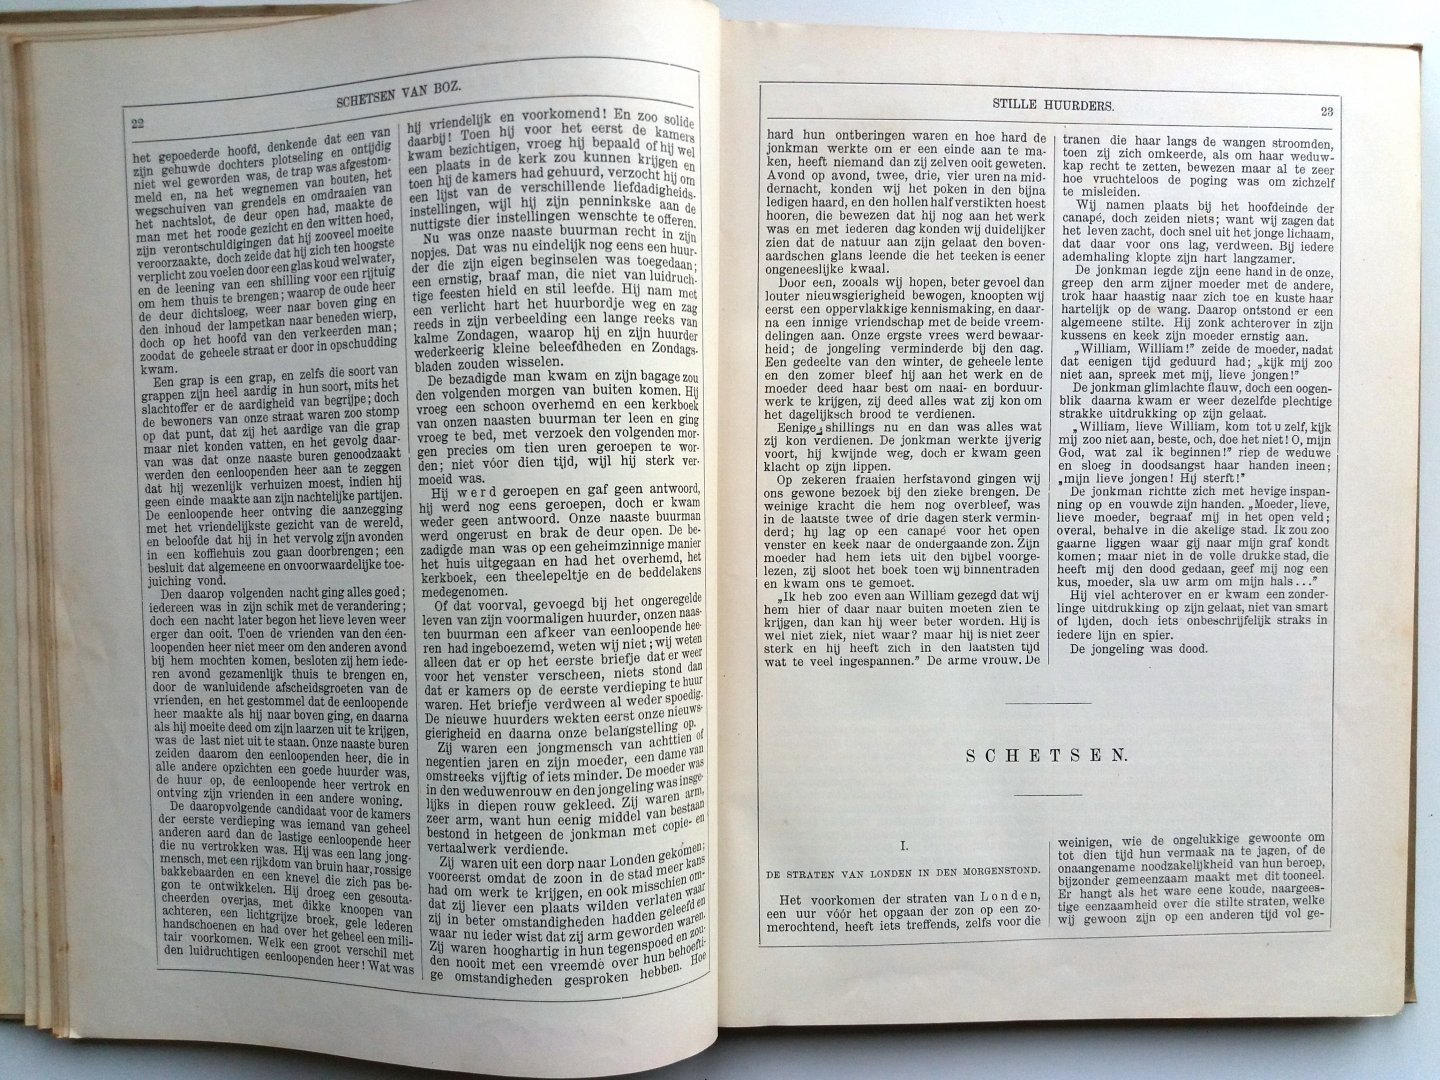 Dickens, Charles - Schetsen van Boz (Vertaling van Mevrouw van Westrheene en C.M. Mensing - Houtgravuren naar teekeningen van F. Barnard)